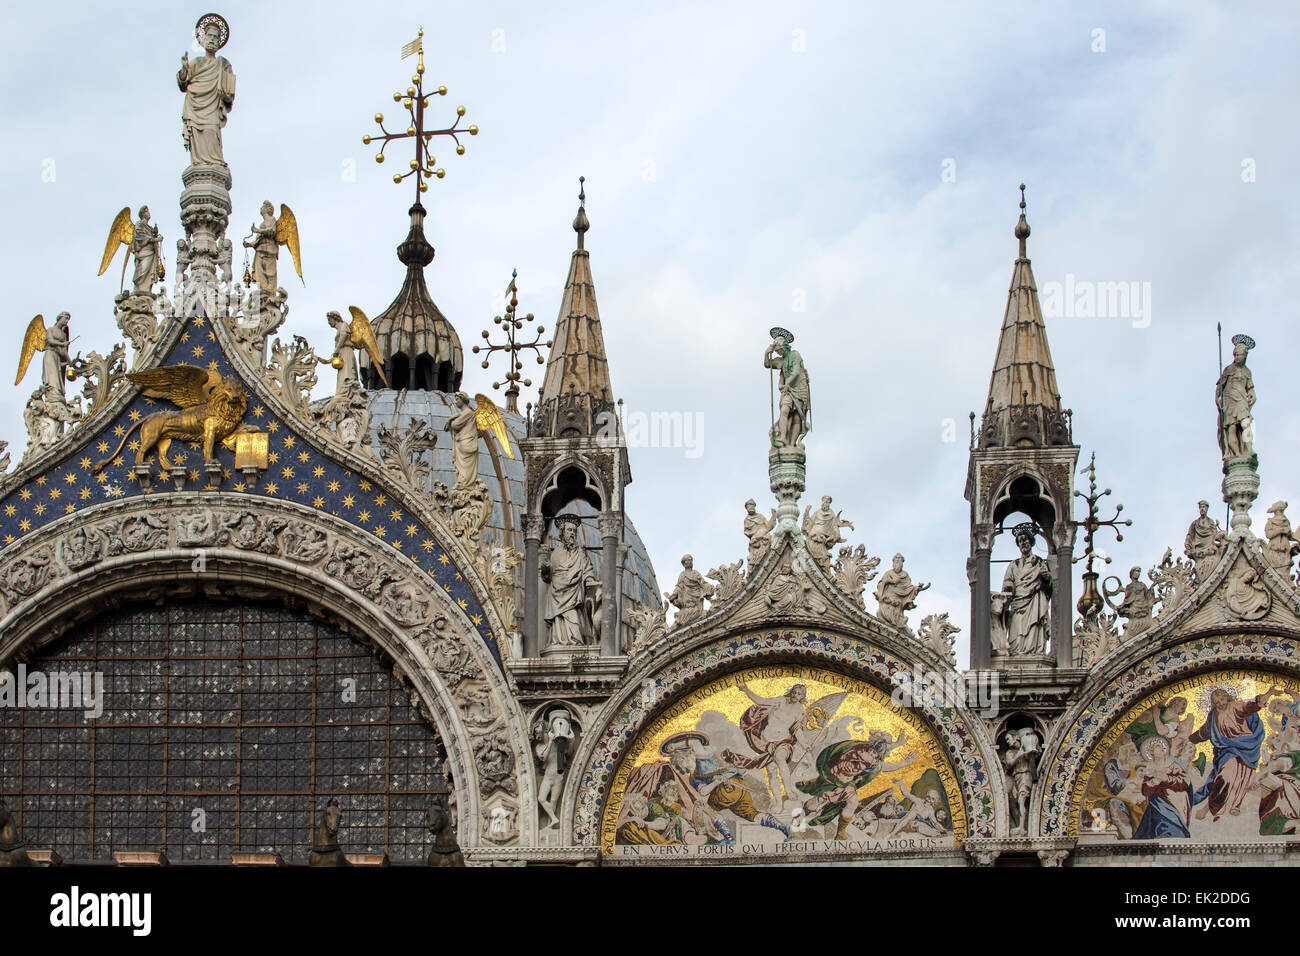 St. Mark's Basilica, Venice, Italy Stock Photo